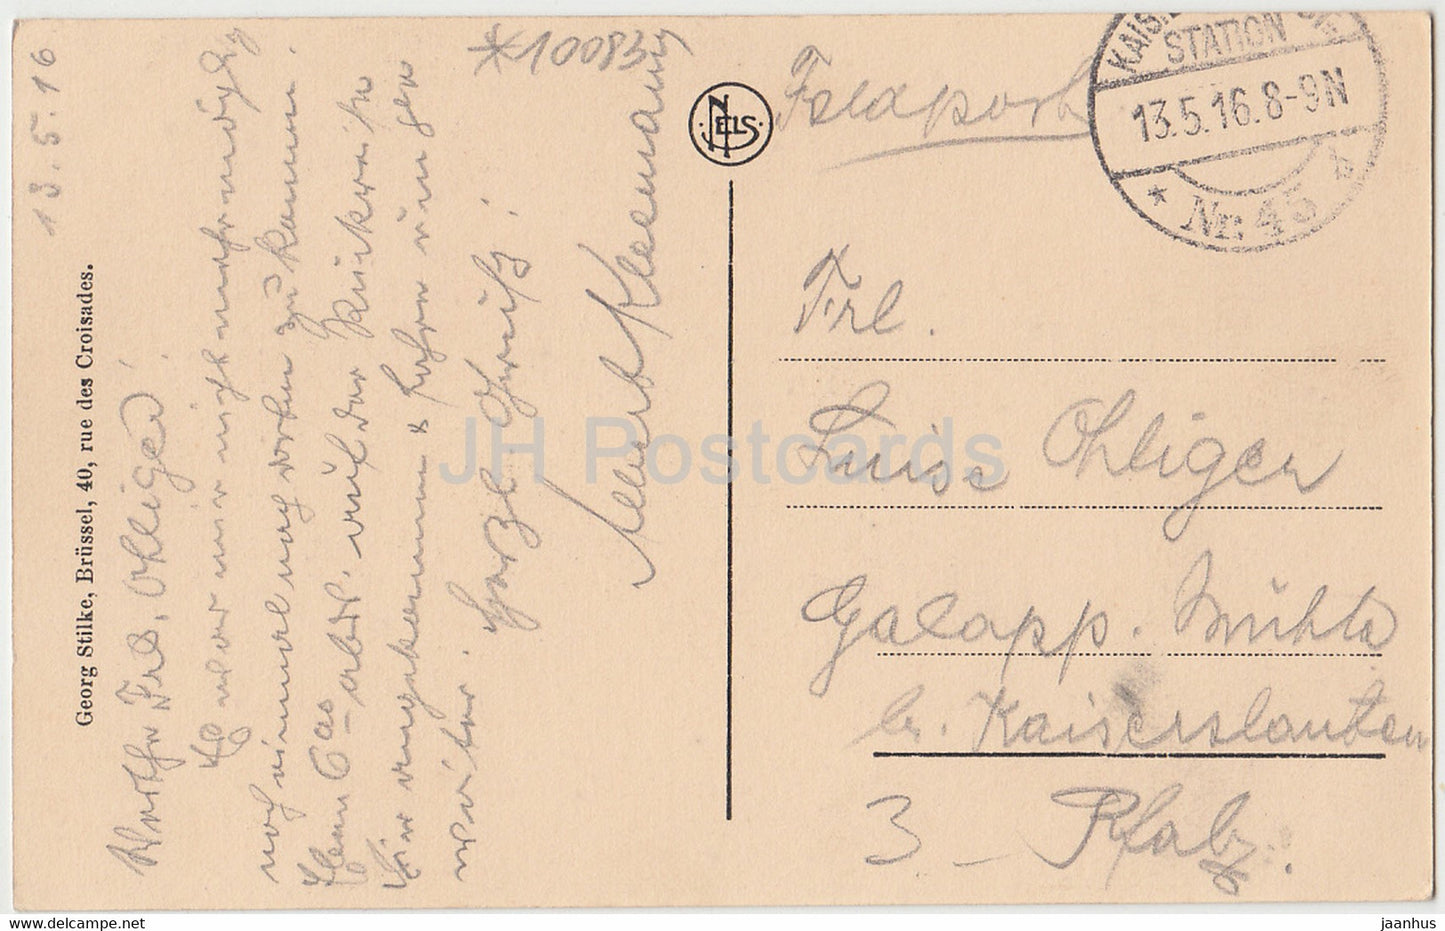 Saint Quentin - Historische Windmühle - Windmühle - alte Postkarte - 1916 - Frankreich - gebraucht